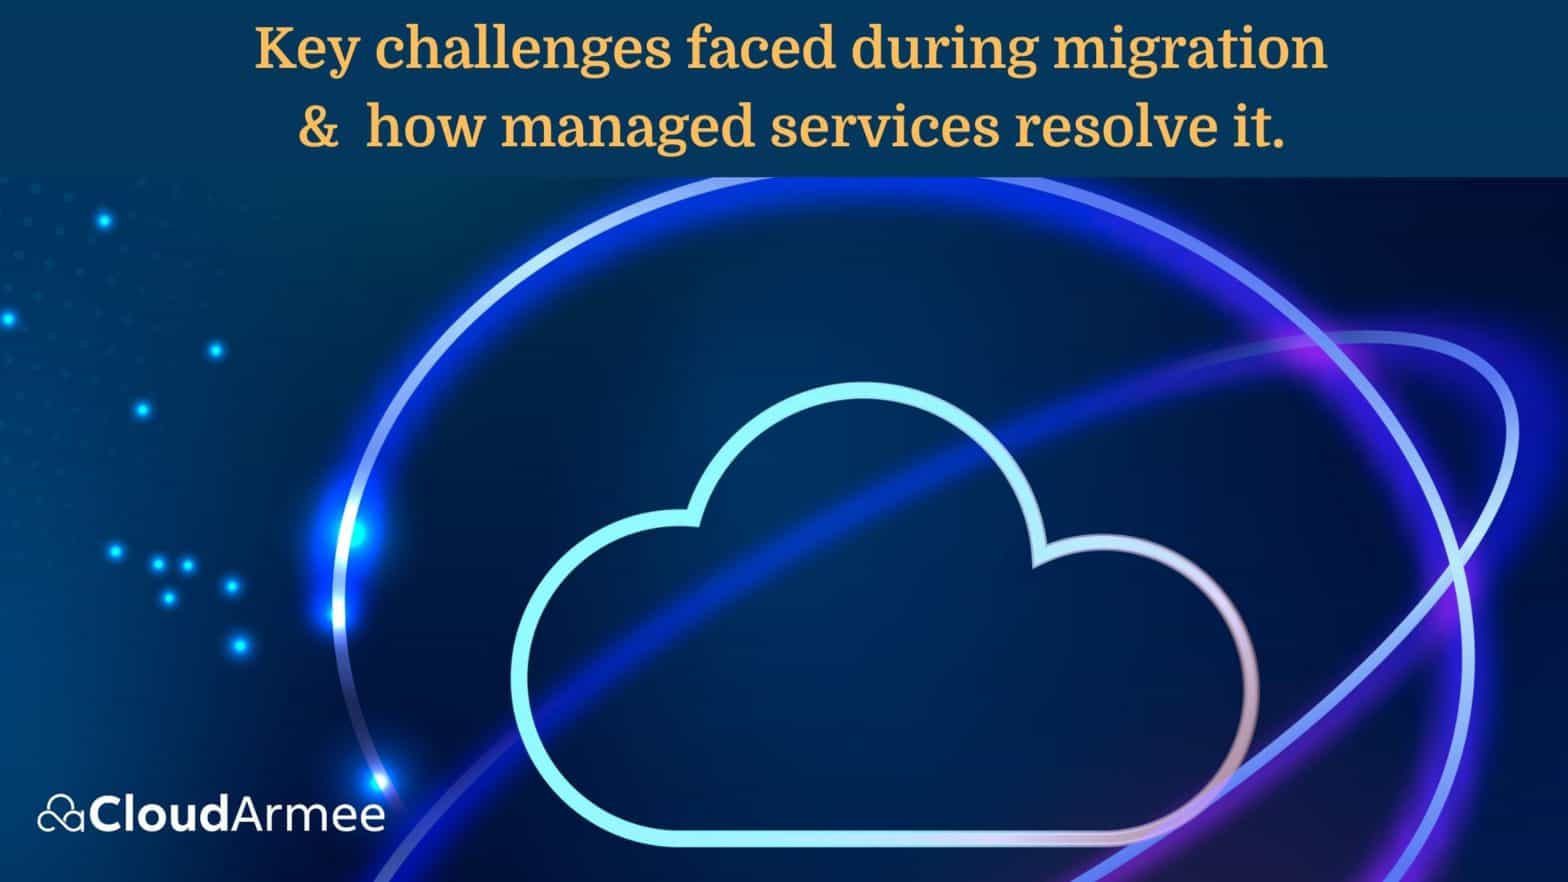 cloud migration service